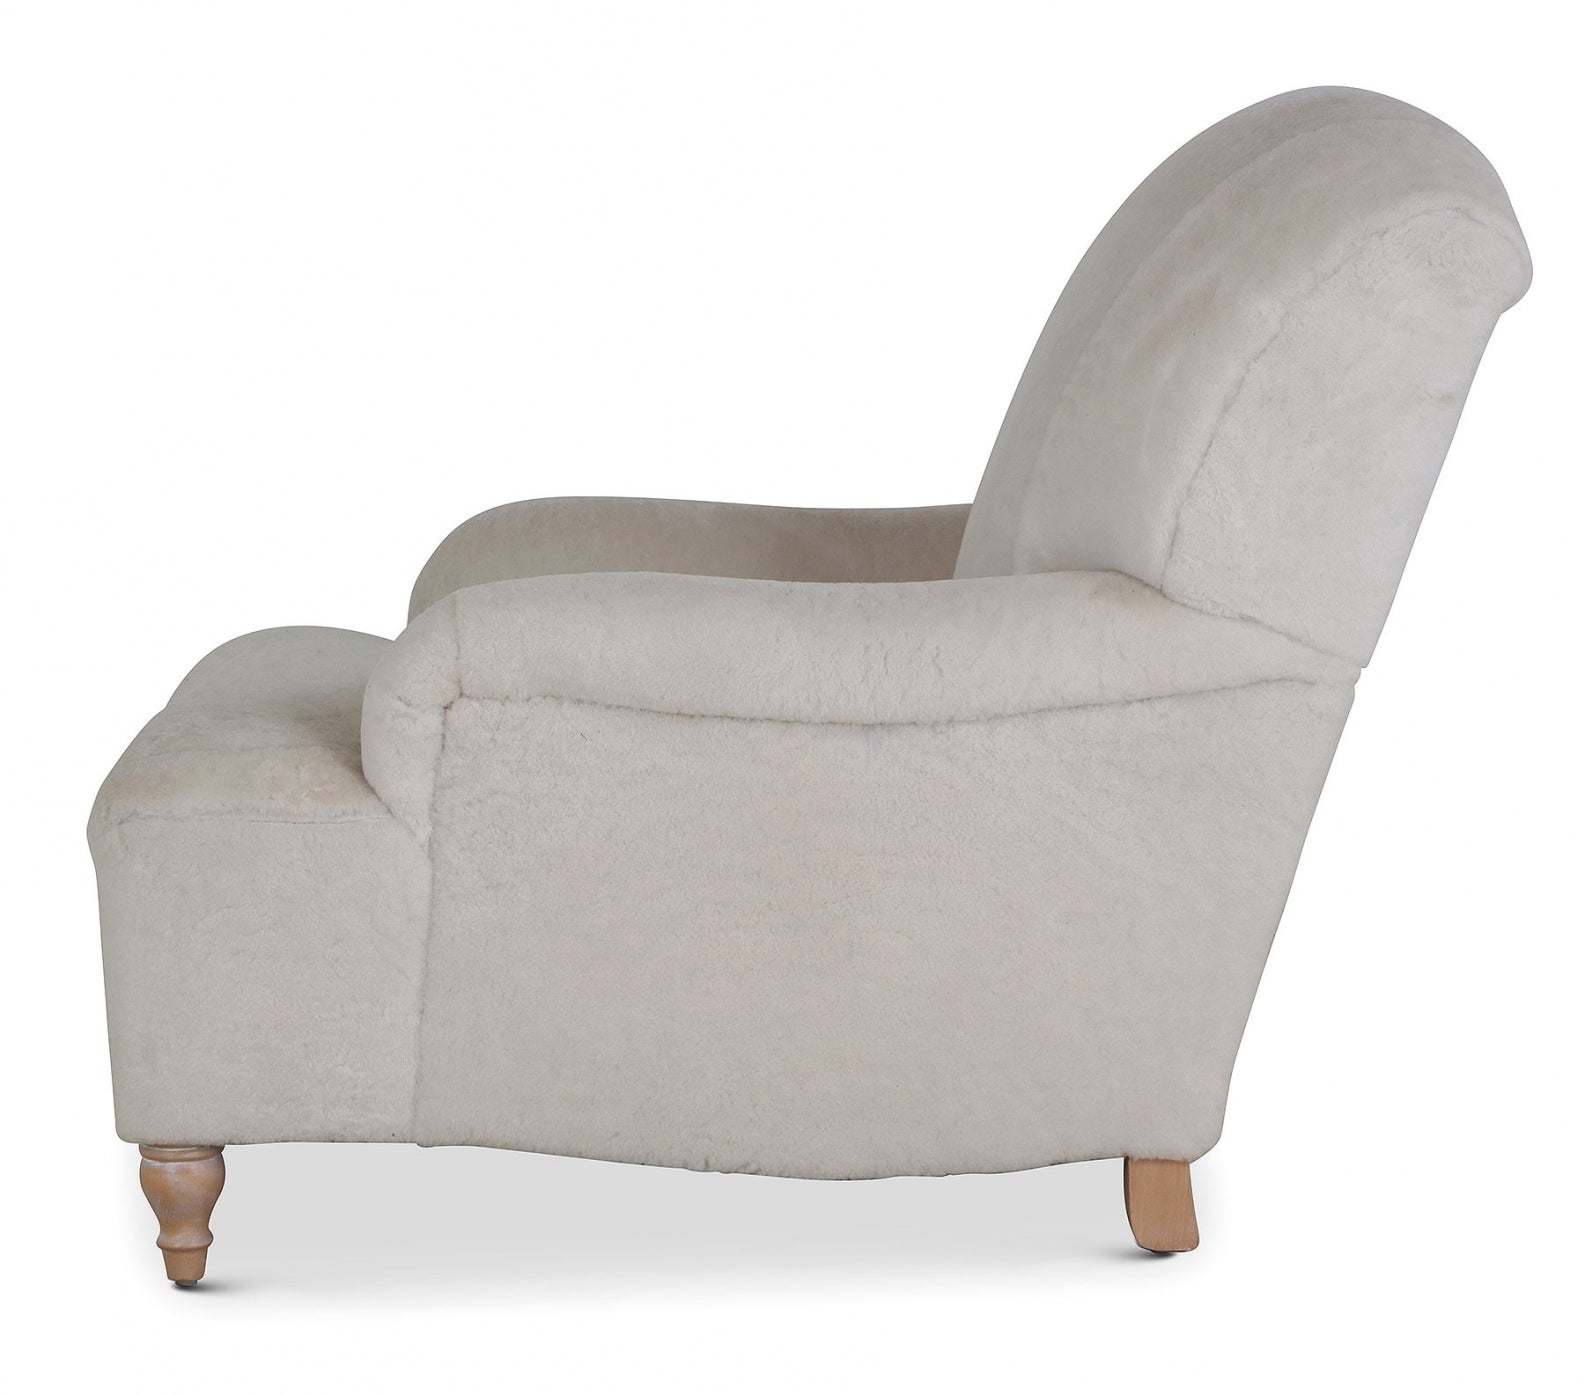 Milton 1930s style easy chair in sheepskin wool